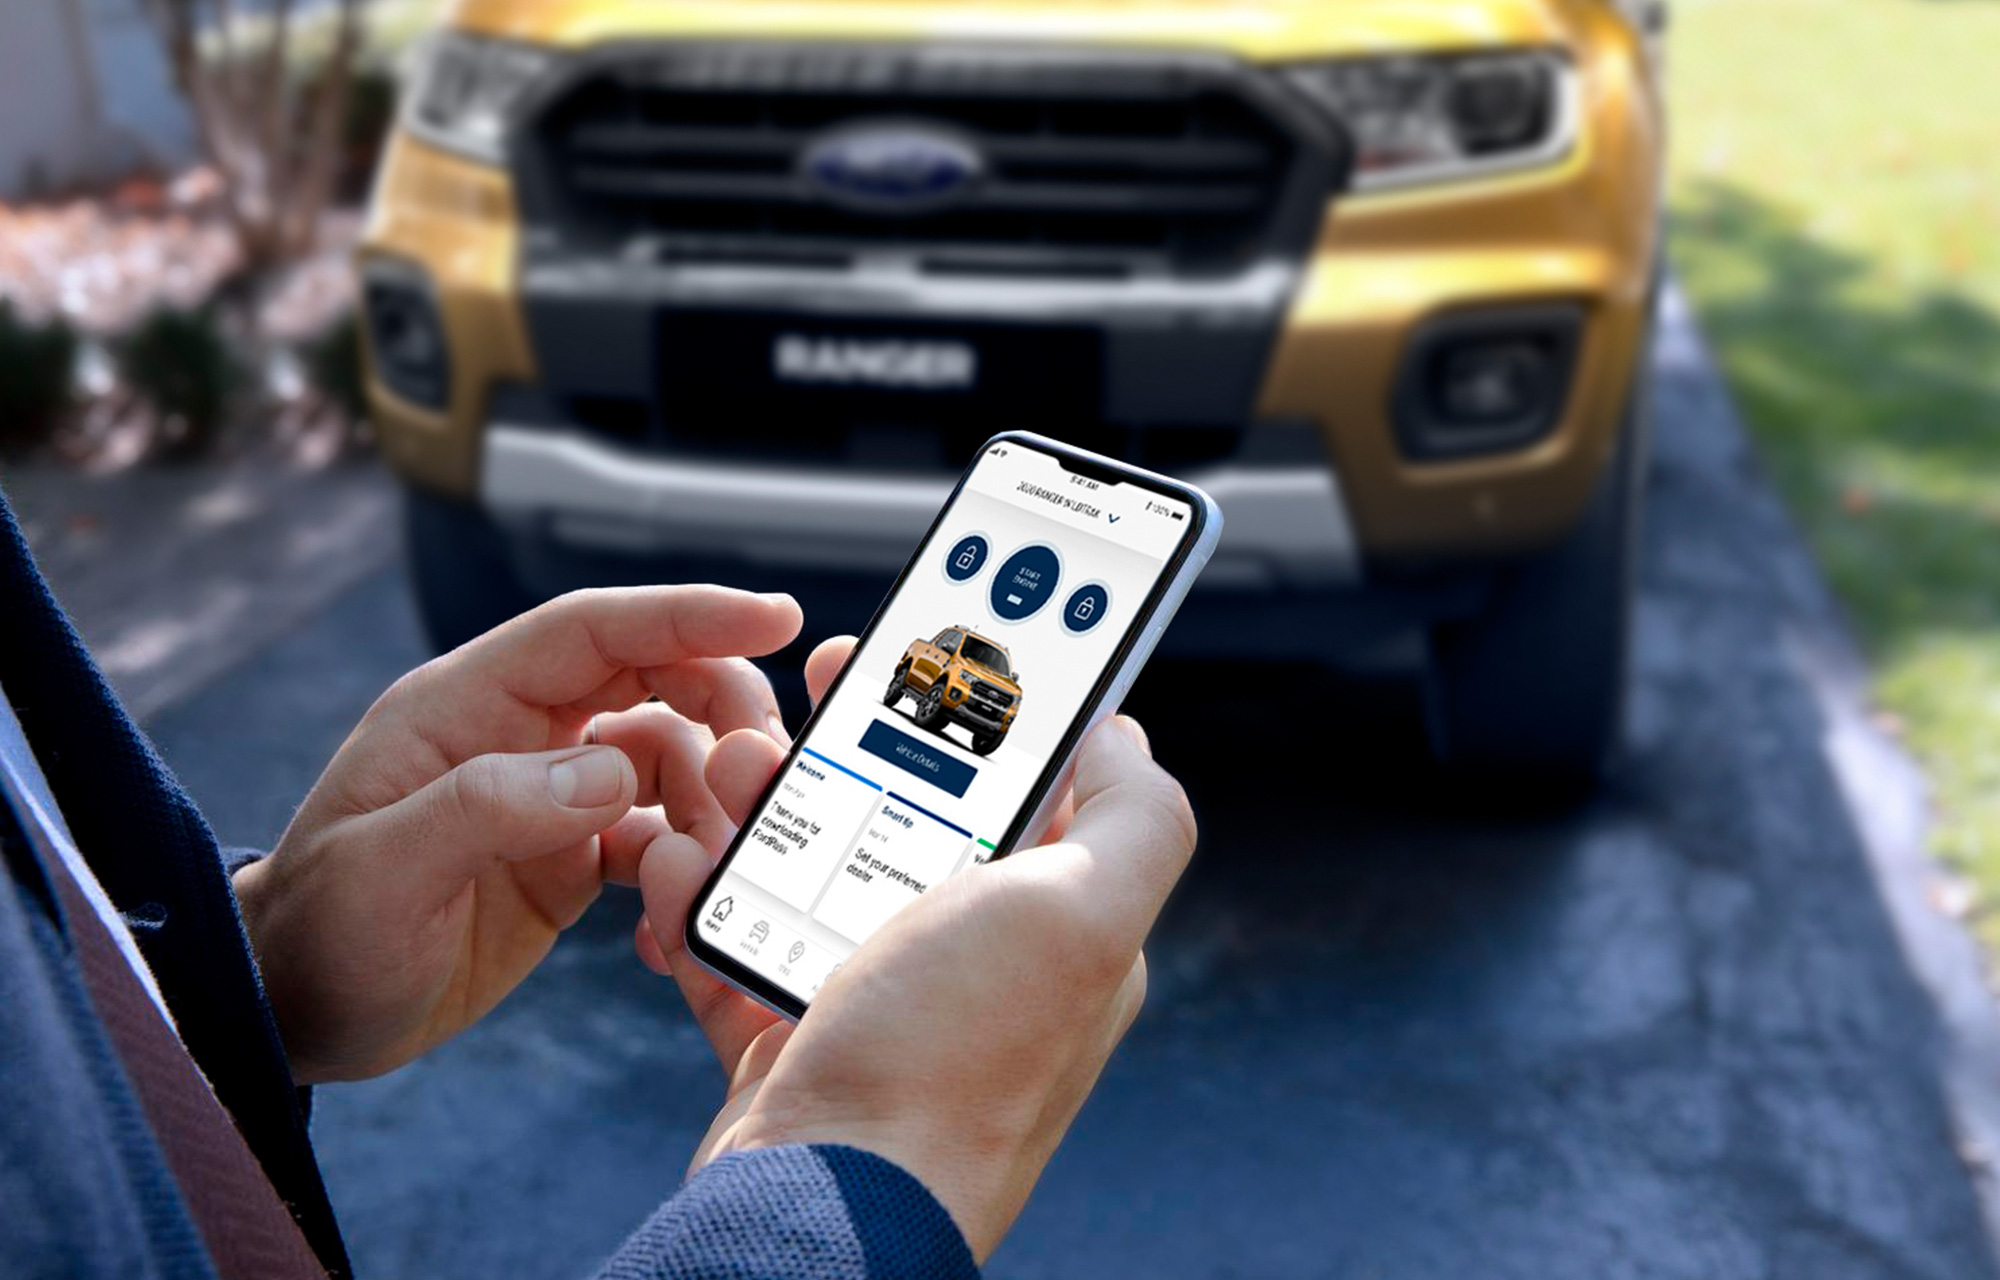 Ford cho người dùng ứng dụng FordPass tích điểm đổi linh kiện miễn phí - Ảnh 2.